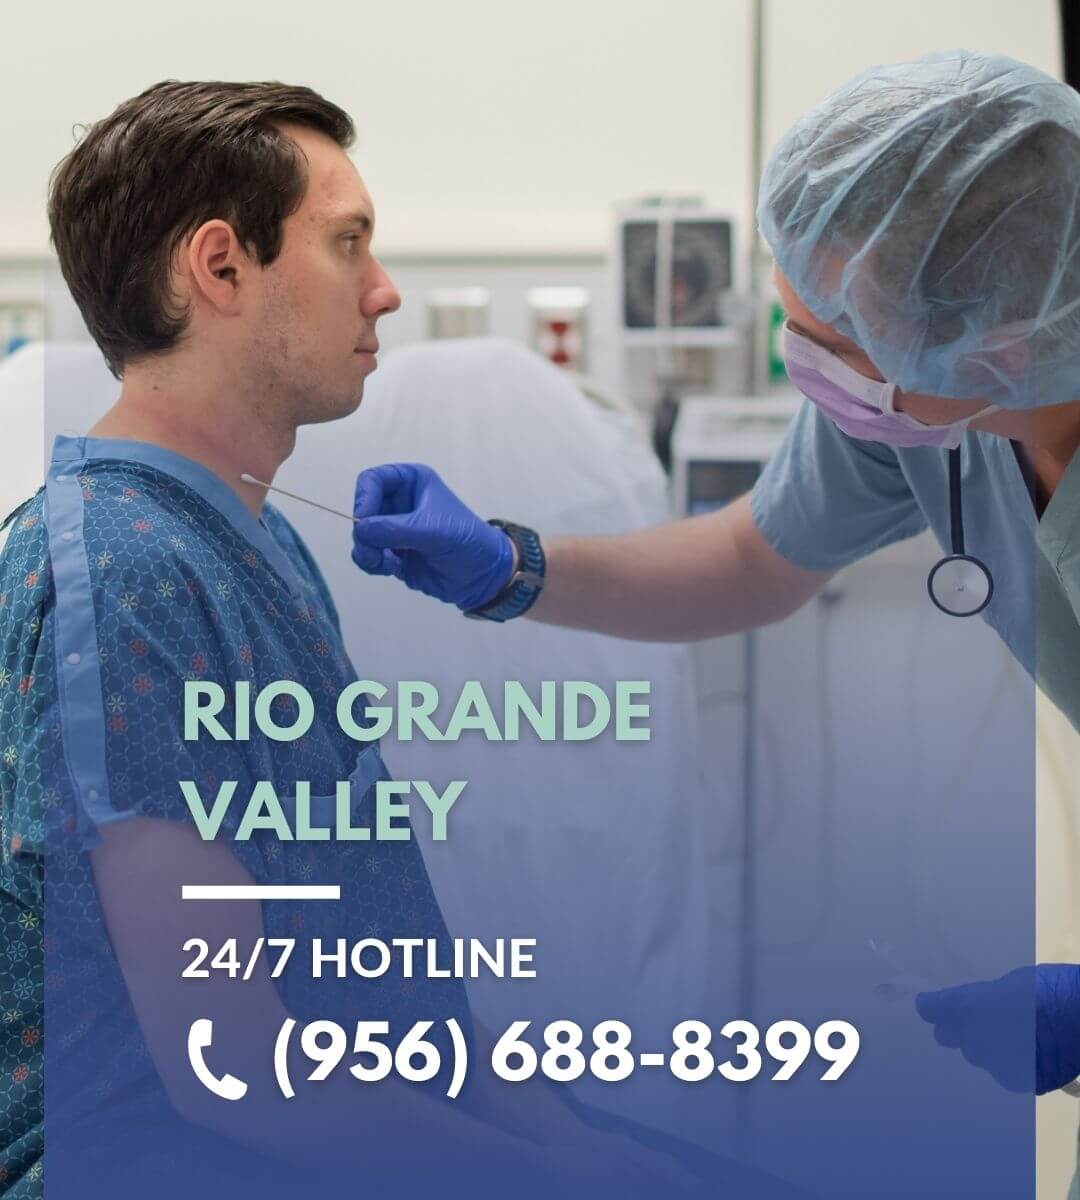 Rio Grande Valley Hotline Image